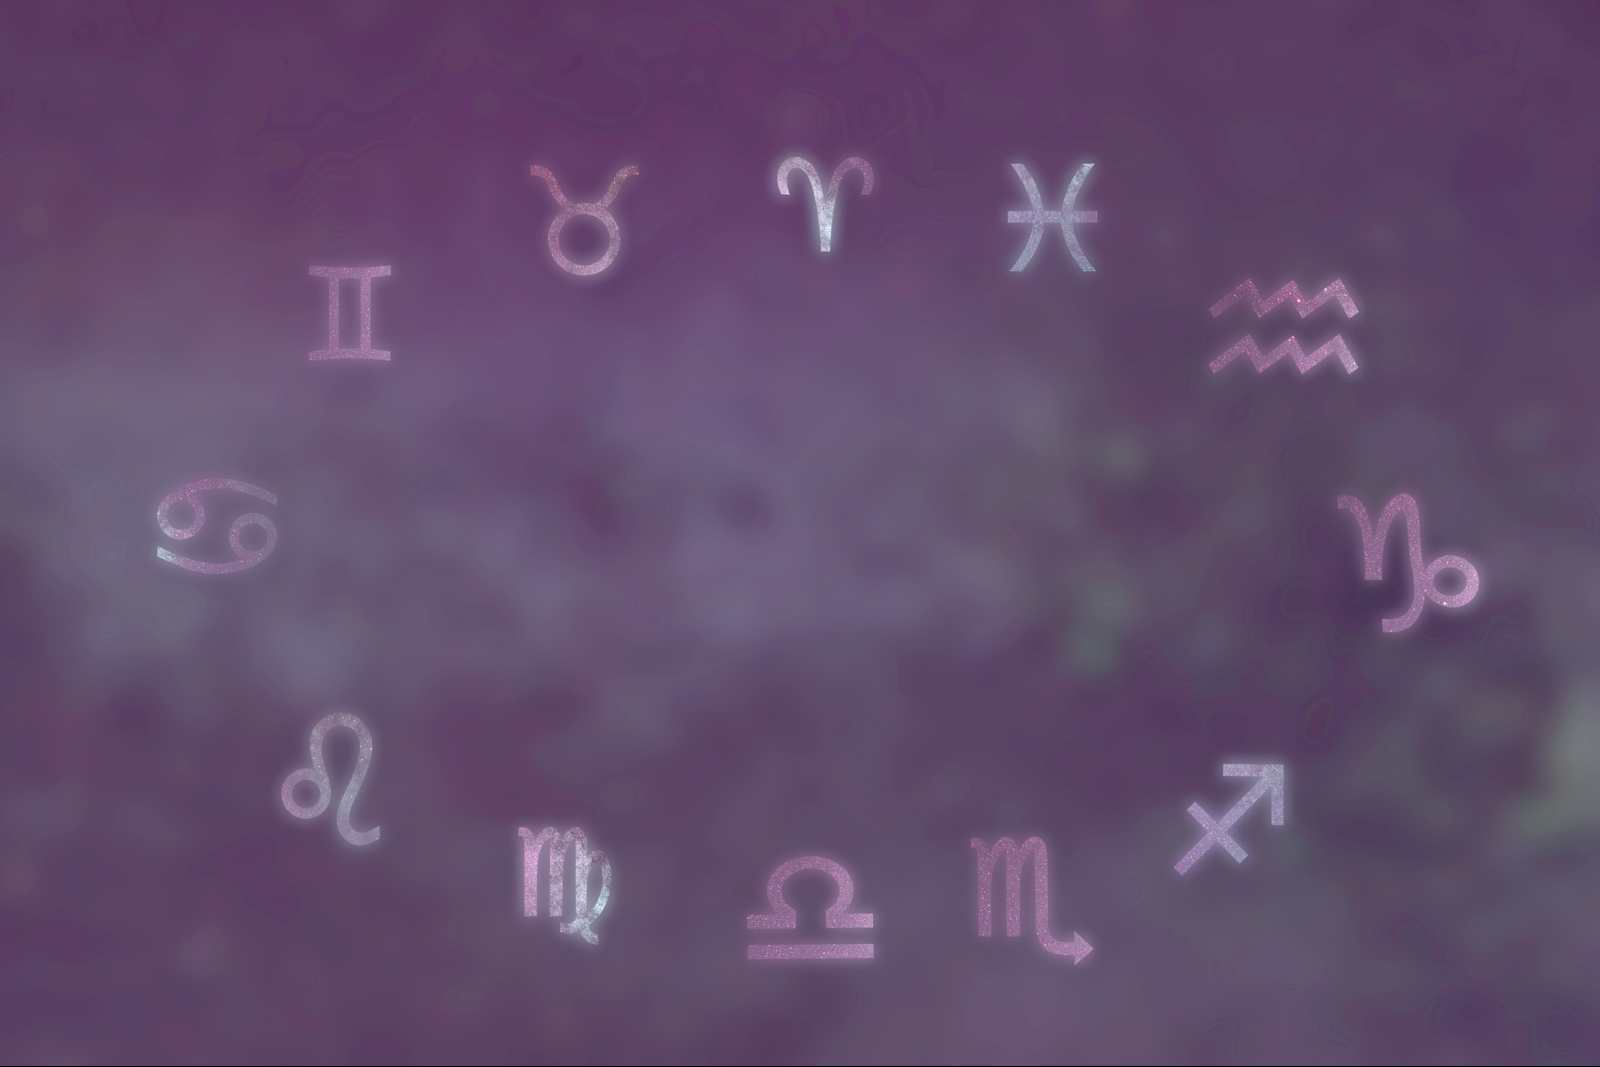 Les 12 signes du zodiaque dans un cercle avec une teinte rose